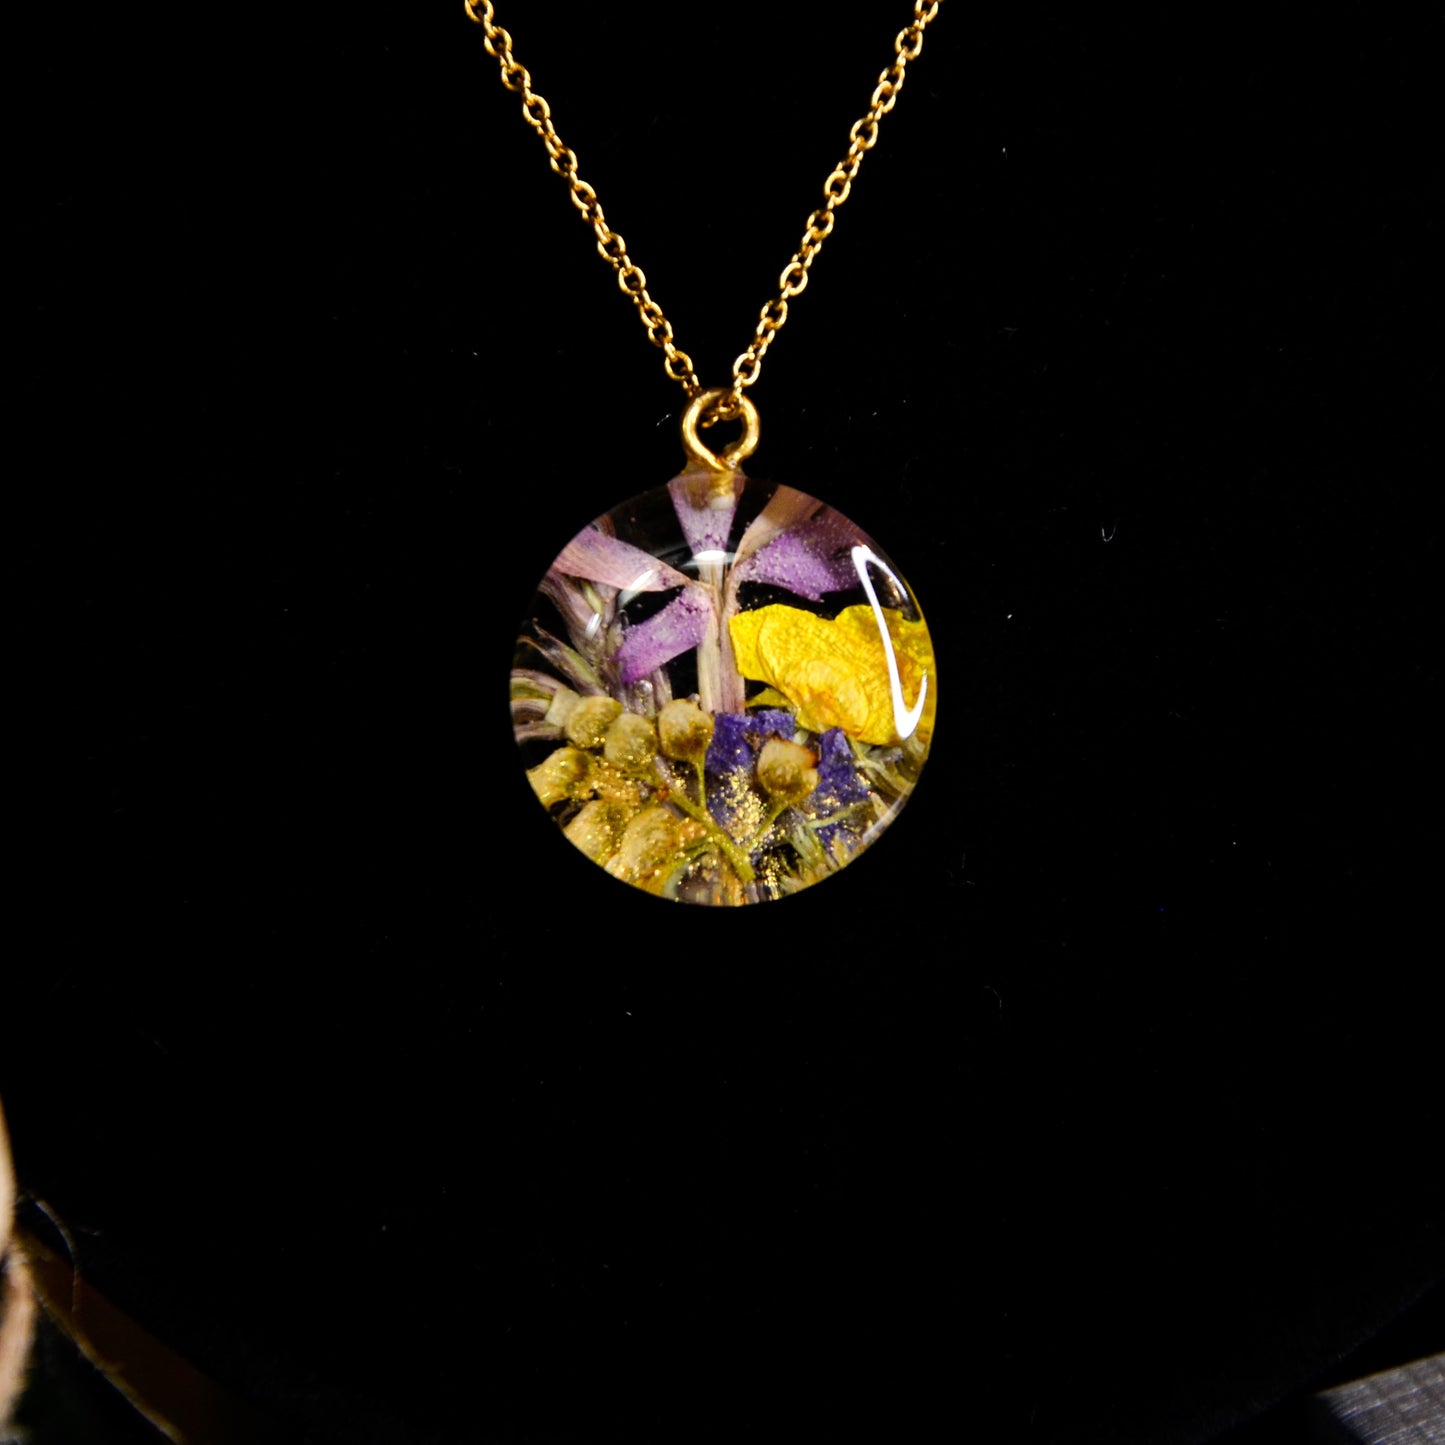 Naszyjnik okrągły z kompozycją kwiatową - kolor złoty, fioletowy z żółtym